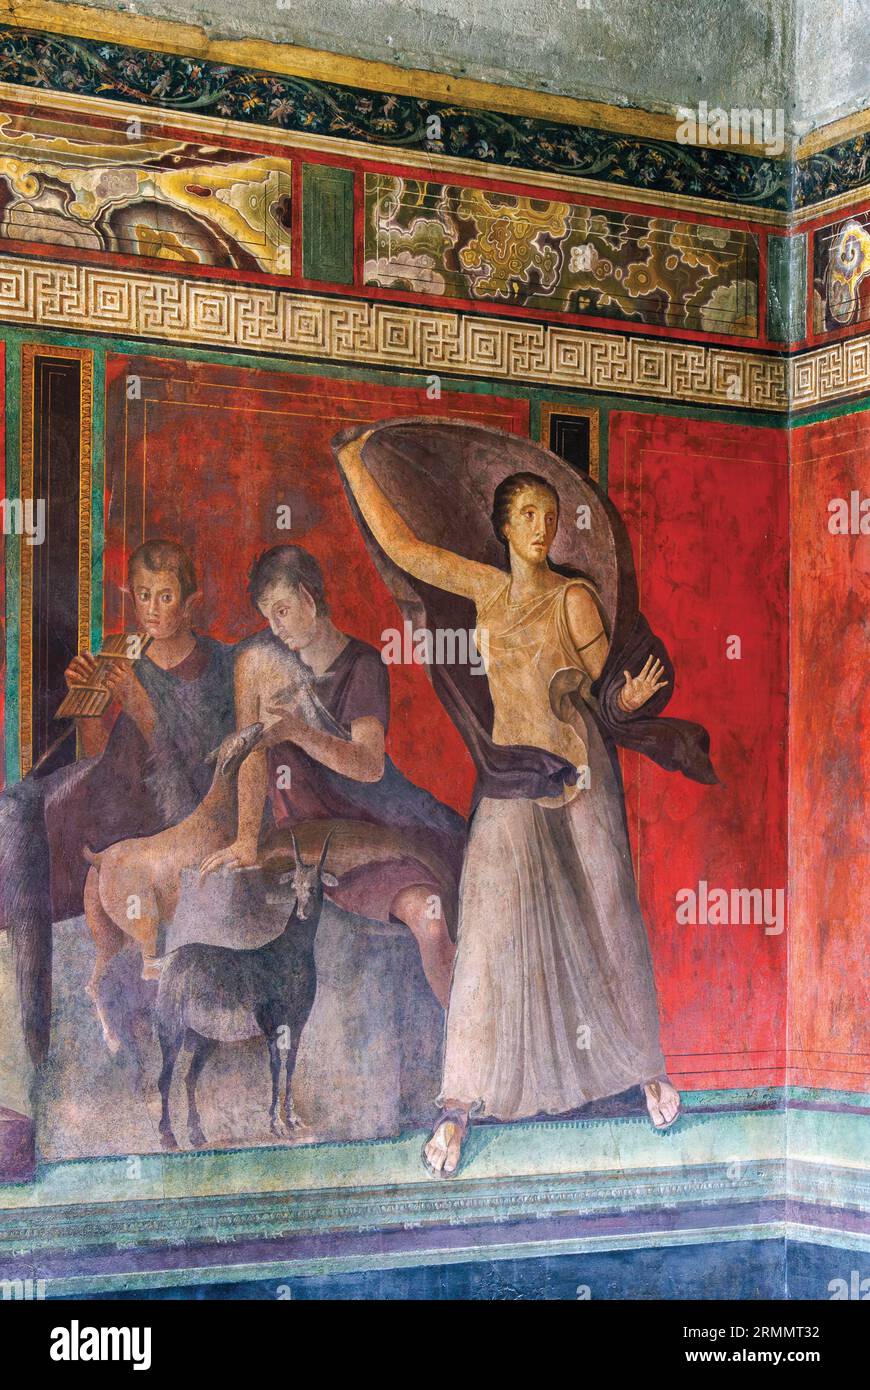 Sito archeologico di Pompei, Campania, Italia. Paniskoi, figure mitologiche che vivevano nel bosco, succhia un bambino e suona musica, mentre è sulla destra Foto Stock